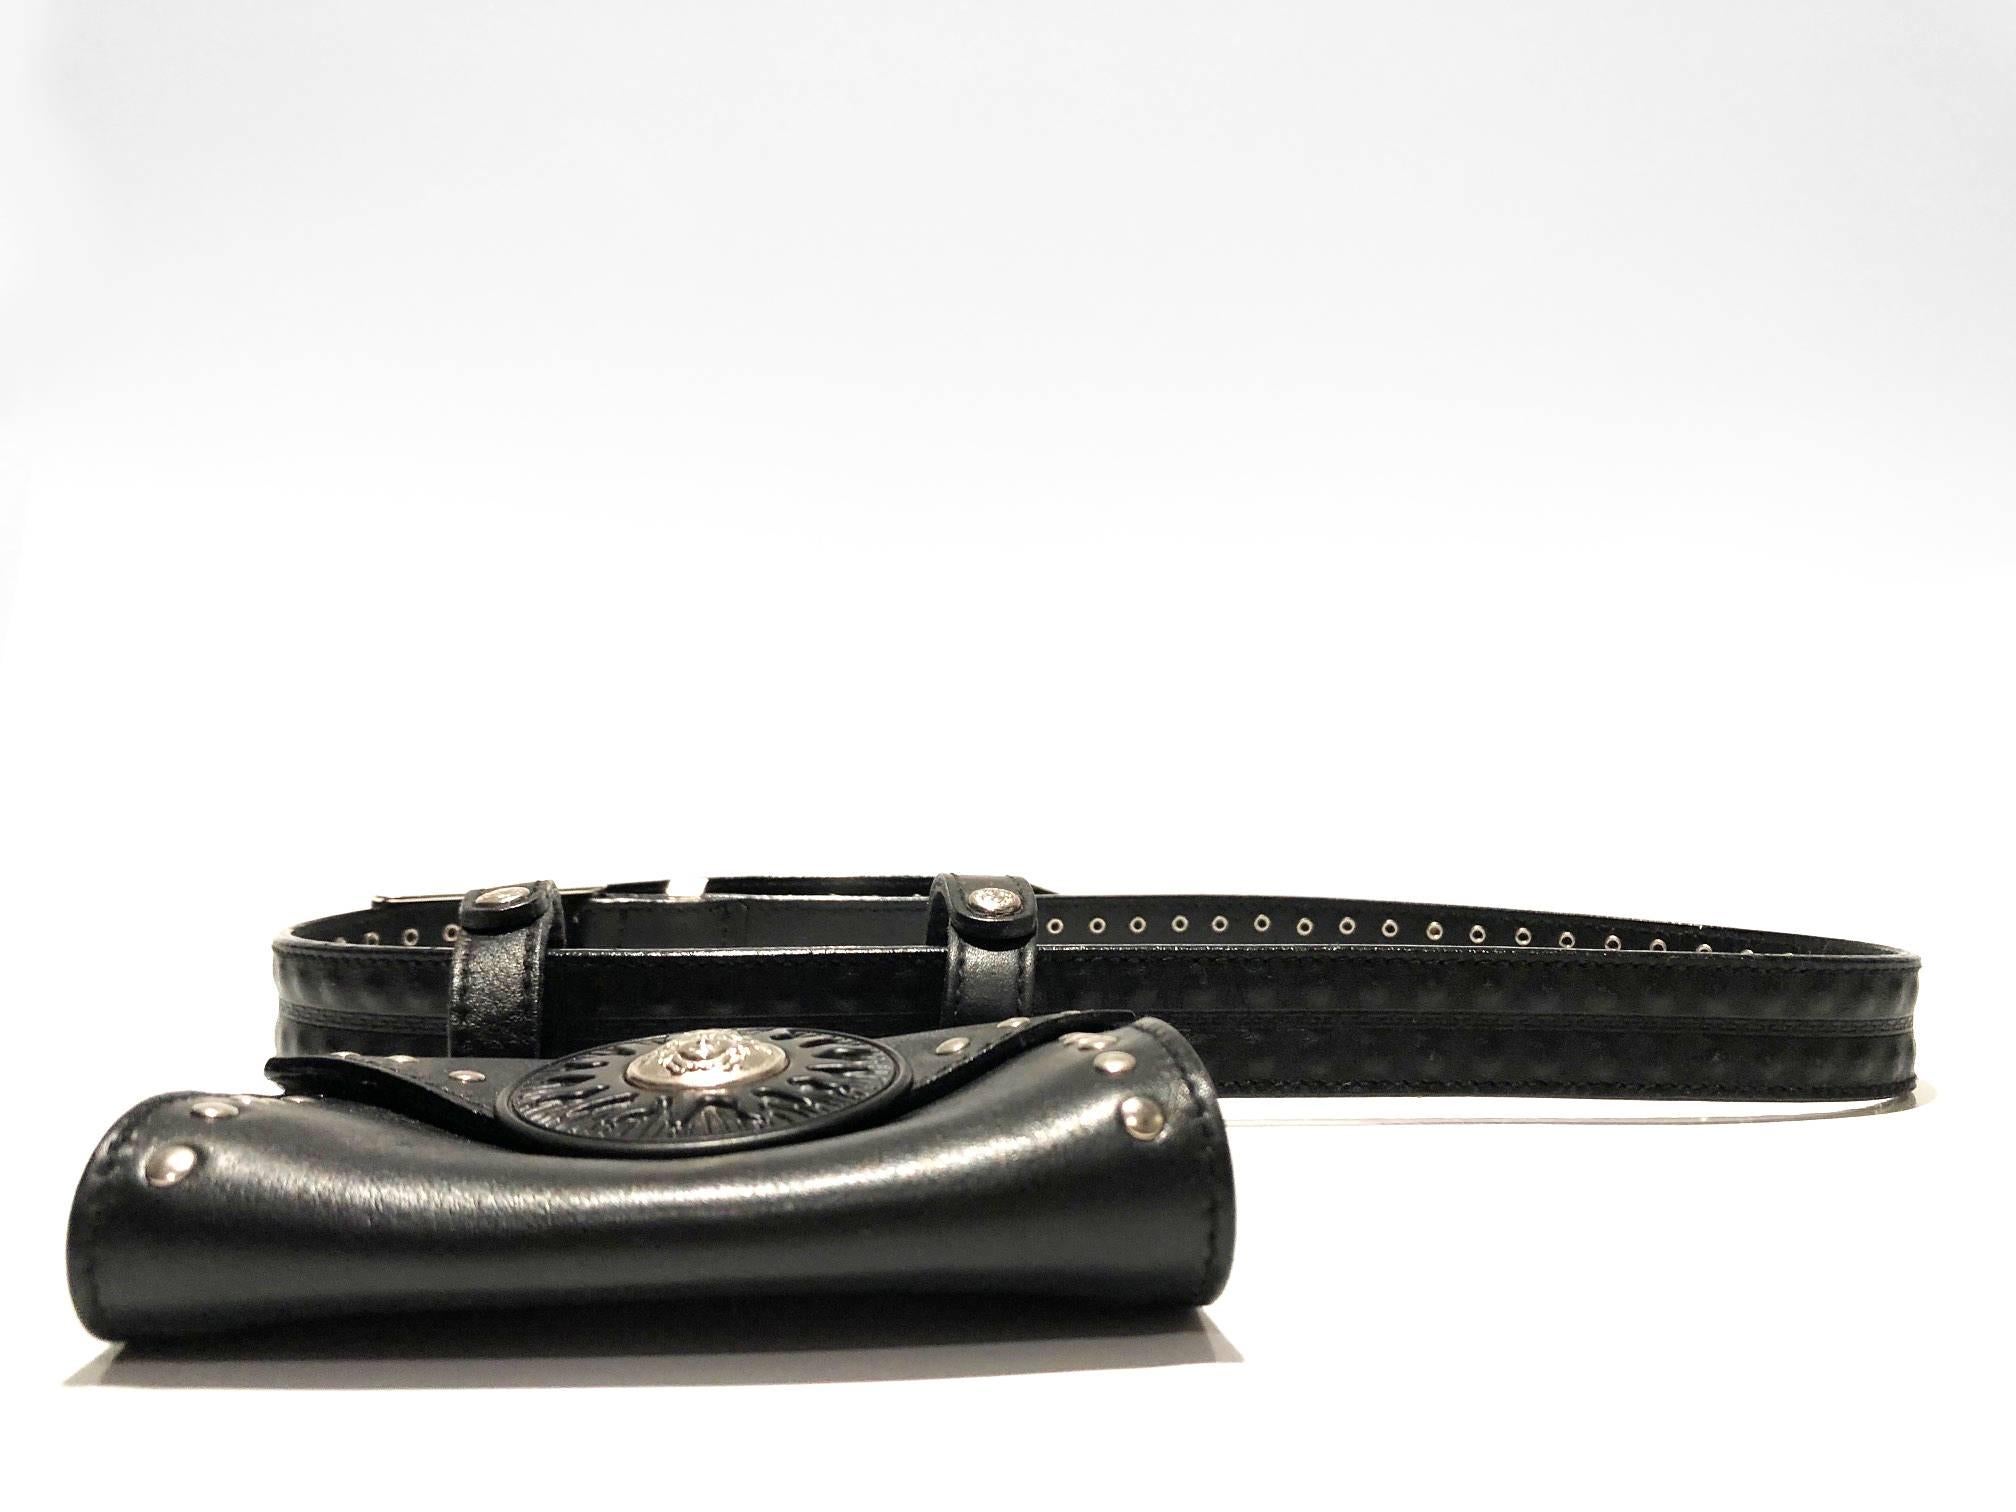 VERSUS Gianni Versace - Mini sac en cuir noir avec clous Medusa, années 1990  Unisexe en vente